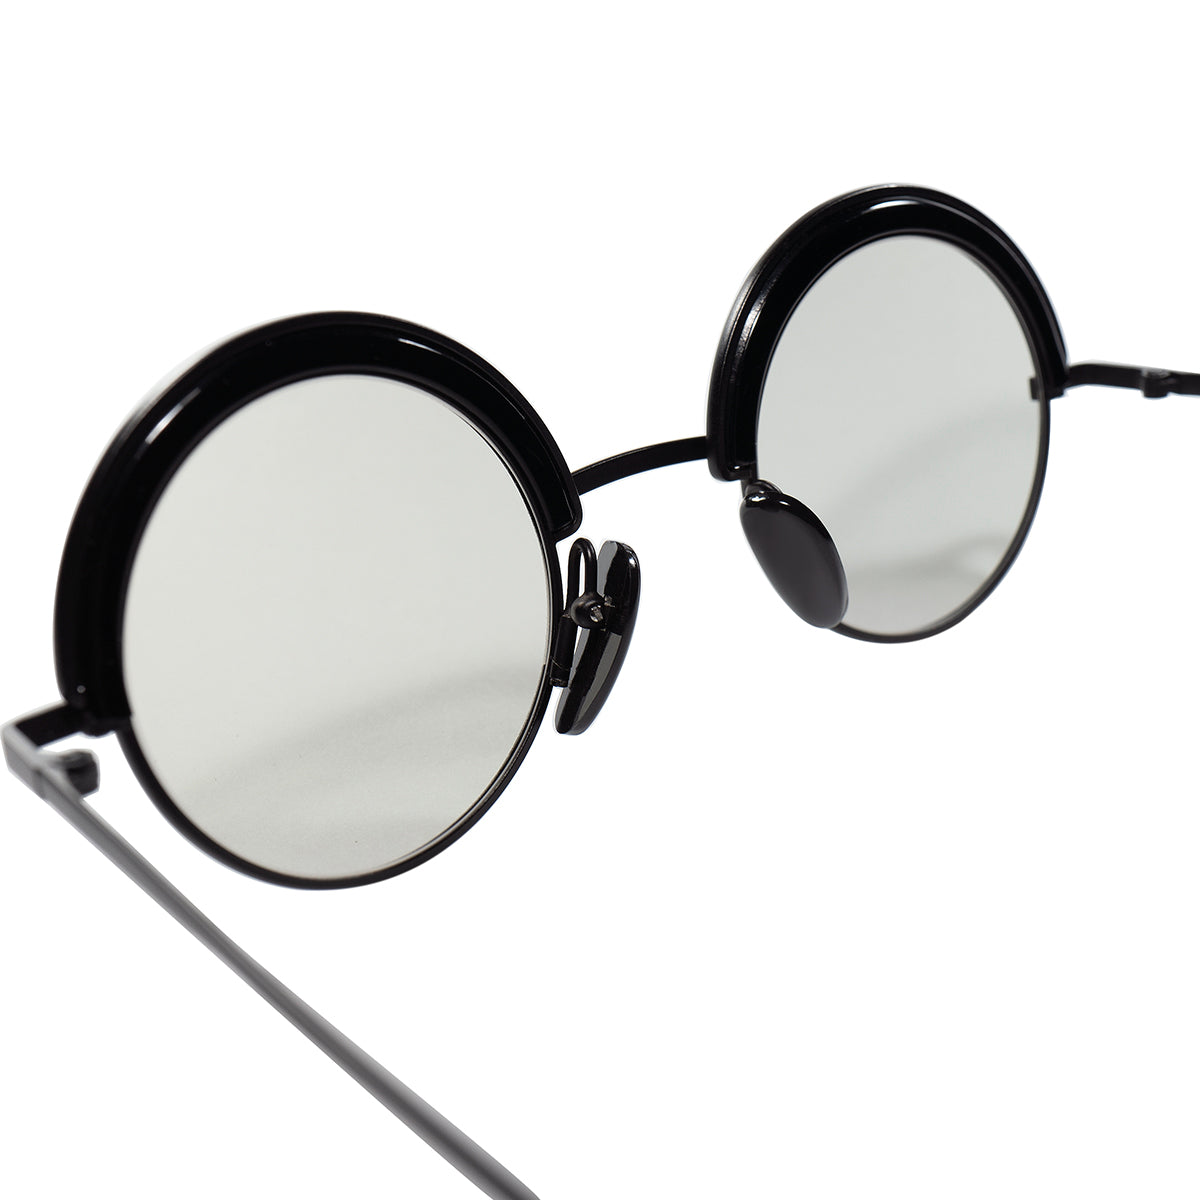 刺さる要素の集合体 上澄液のような頂上TOPピース 1980s 初期フランス製本人期 デッドストック ALAIN MIKLI アランミクリ  ROUNDブローALLBLACK 丸眼鏡 ビンテージ ヴィンテージ 眼鏡 メガネ 【a8290】